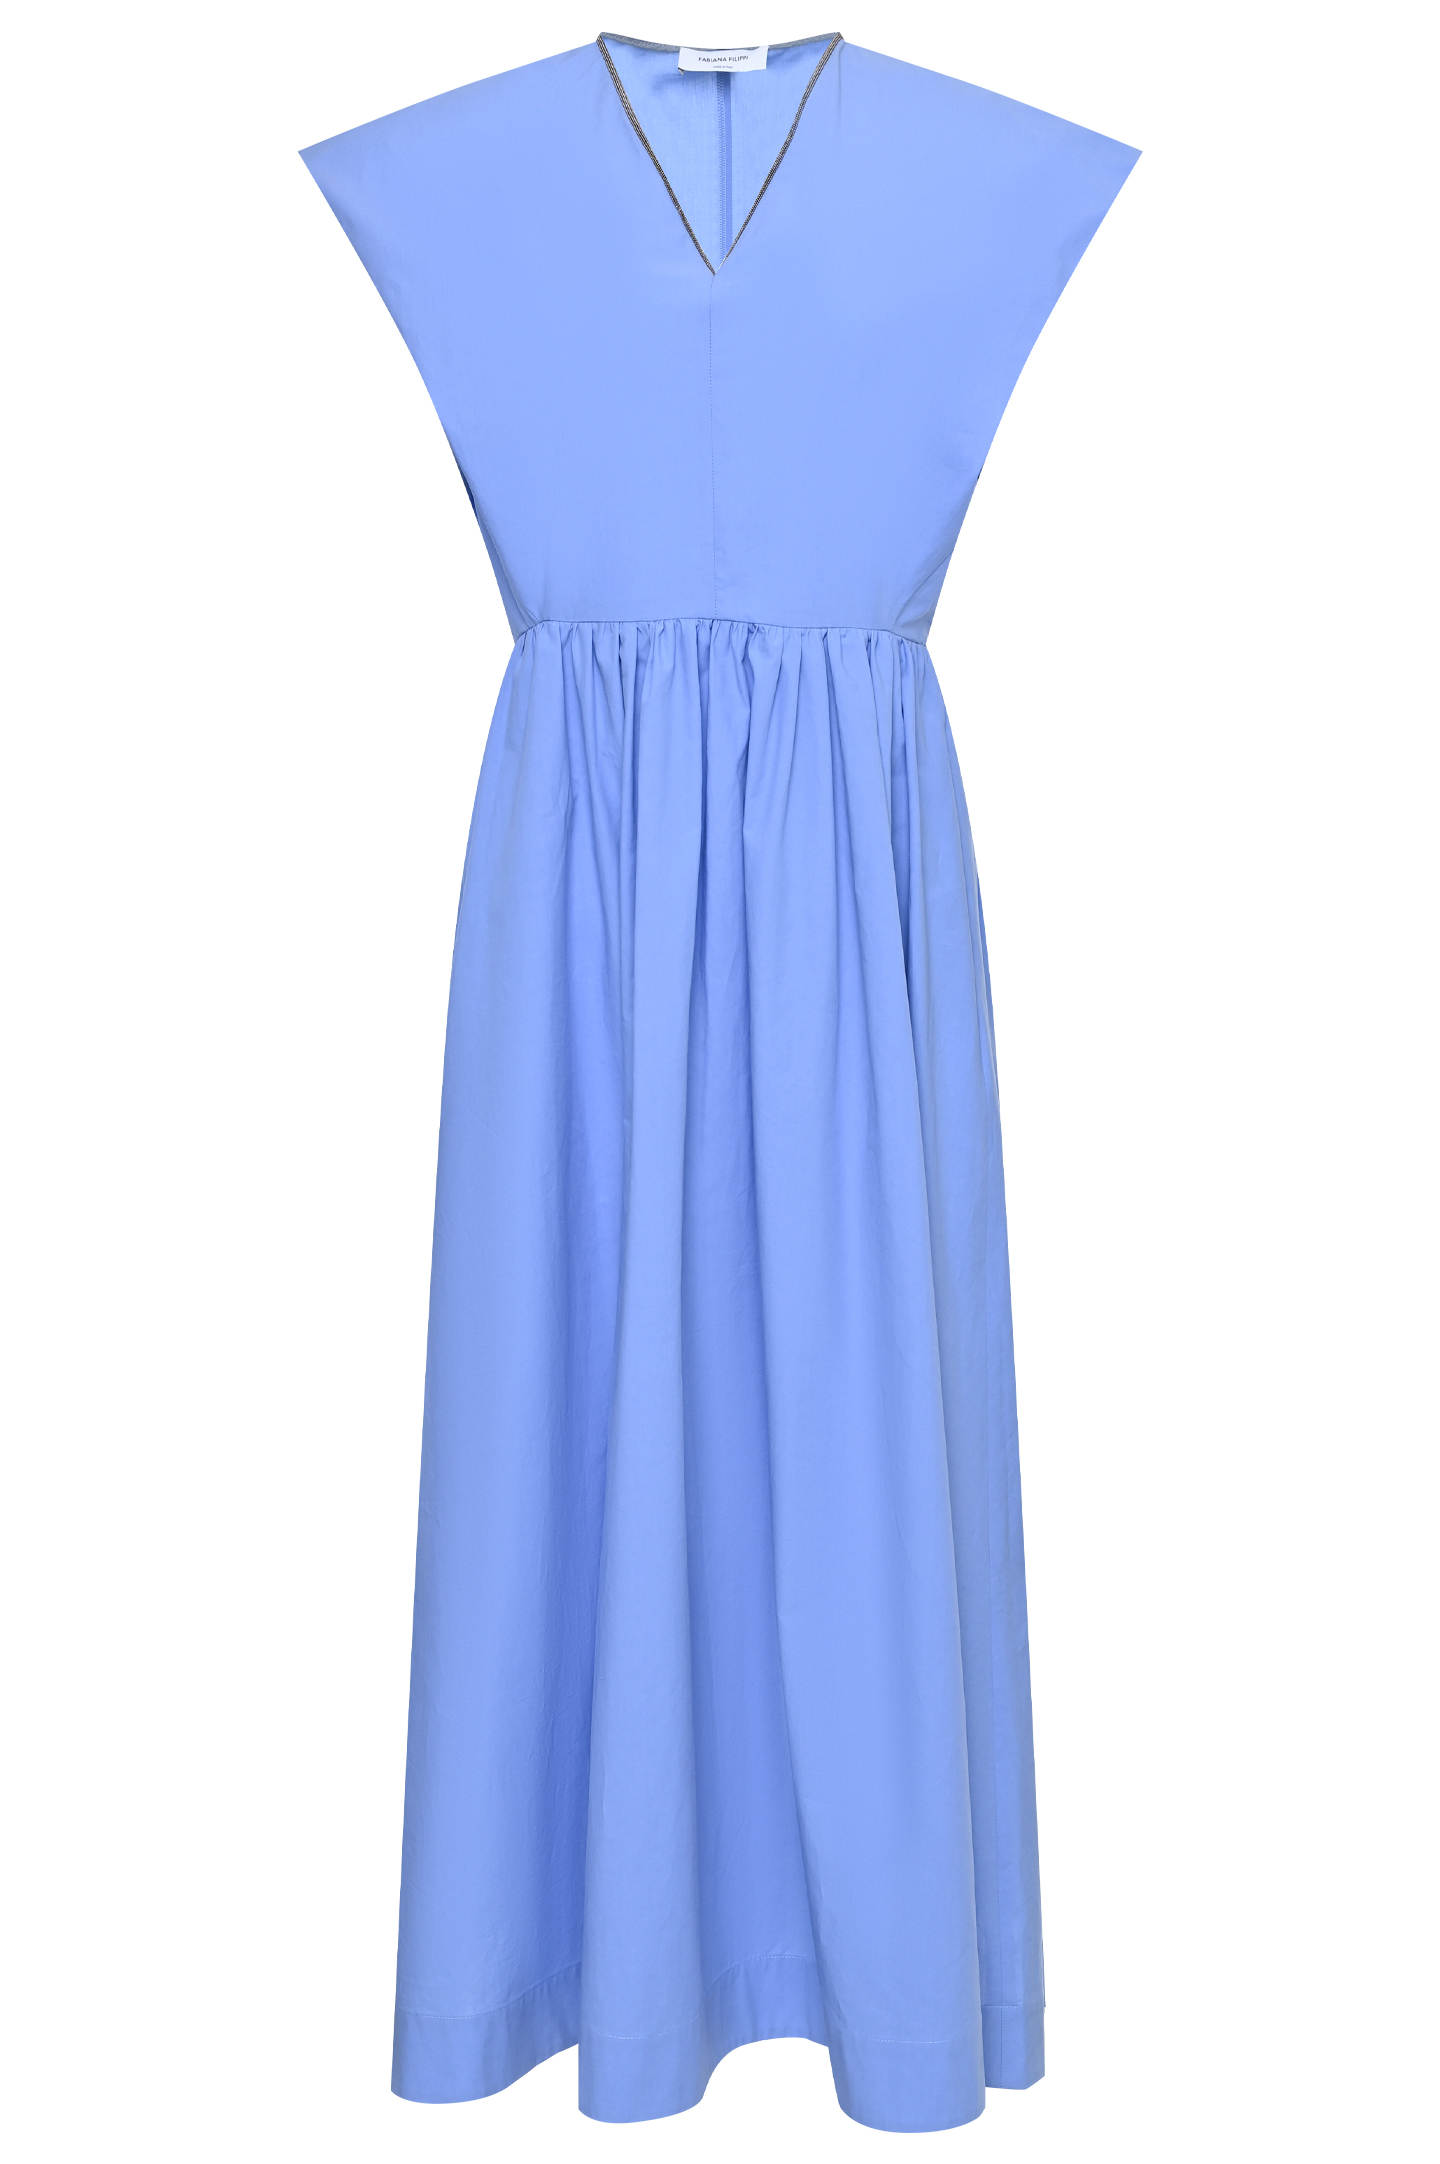 Платье FABIANA FILIPPI ABD273W193D252, цвет: Голубой, Женский